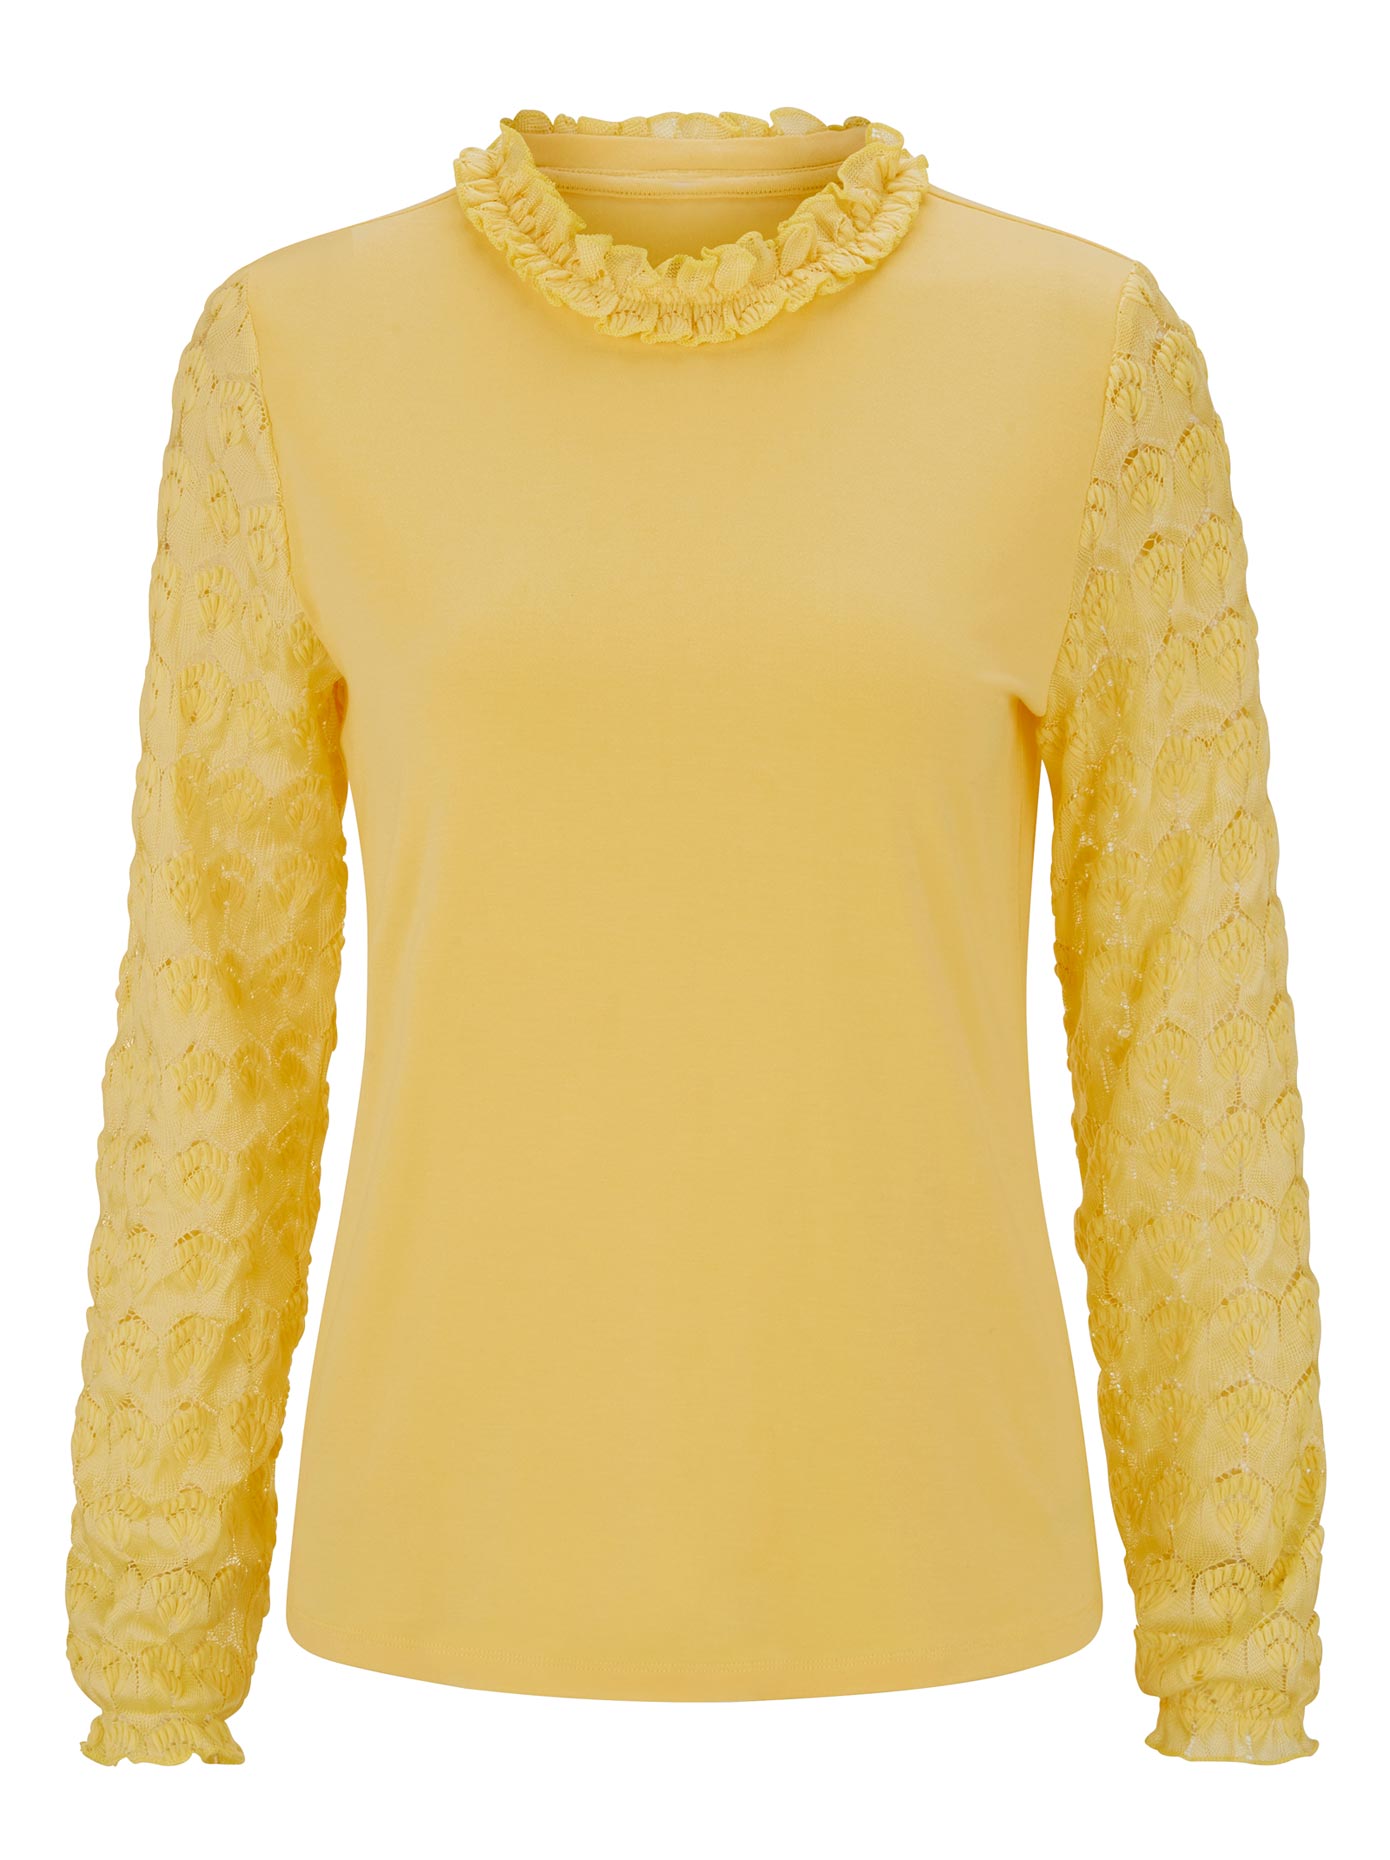 qTHlA Koszulki & topy heine Koszulka LINEA TESINI w kolorze Żółtym 